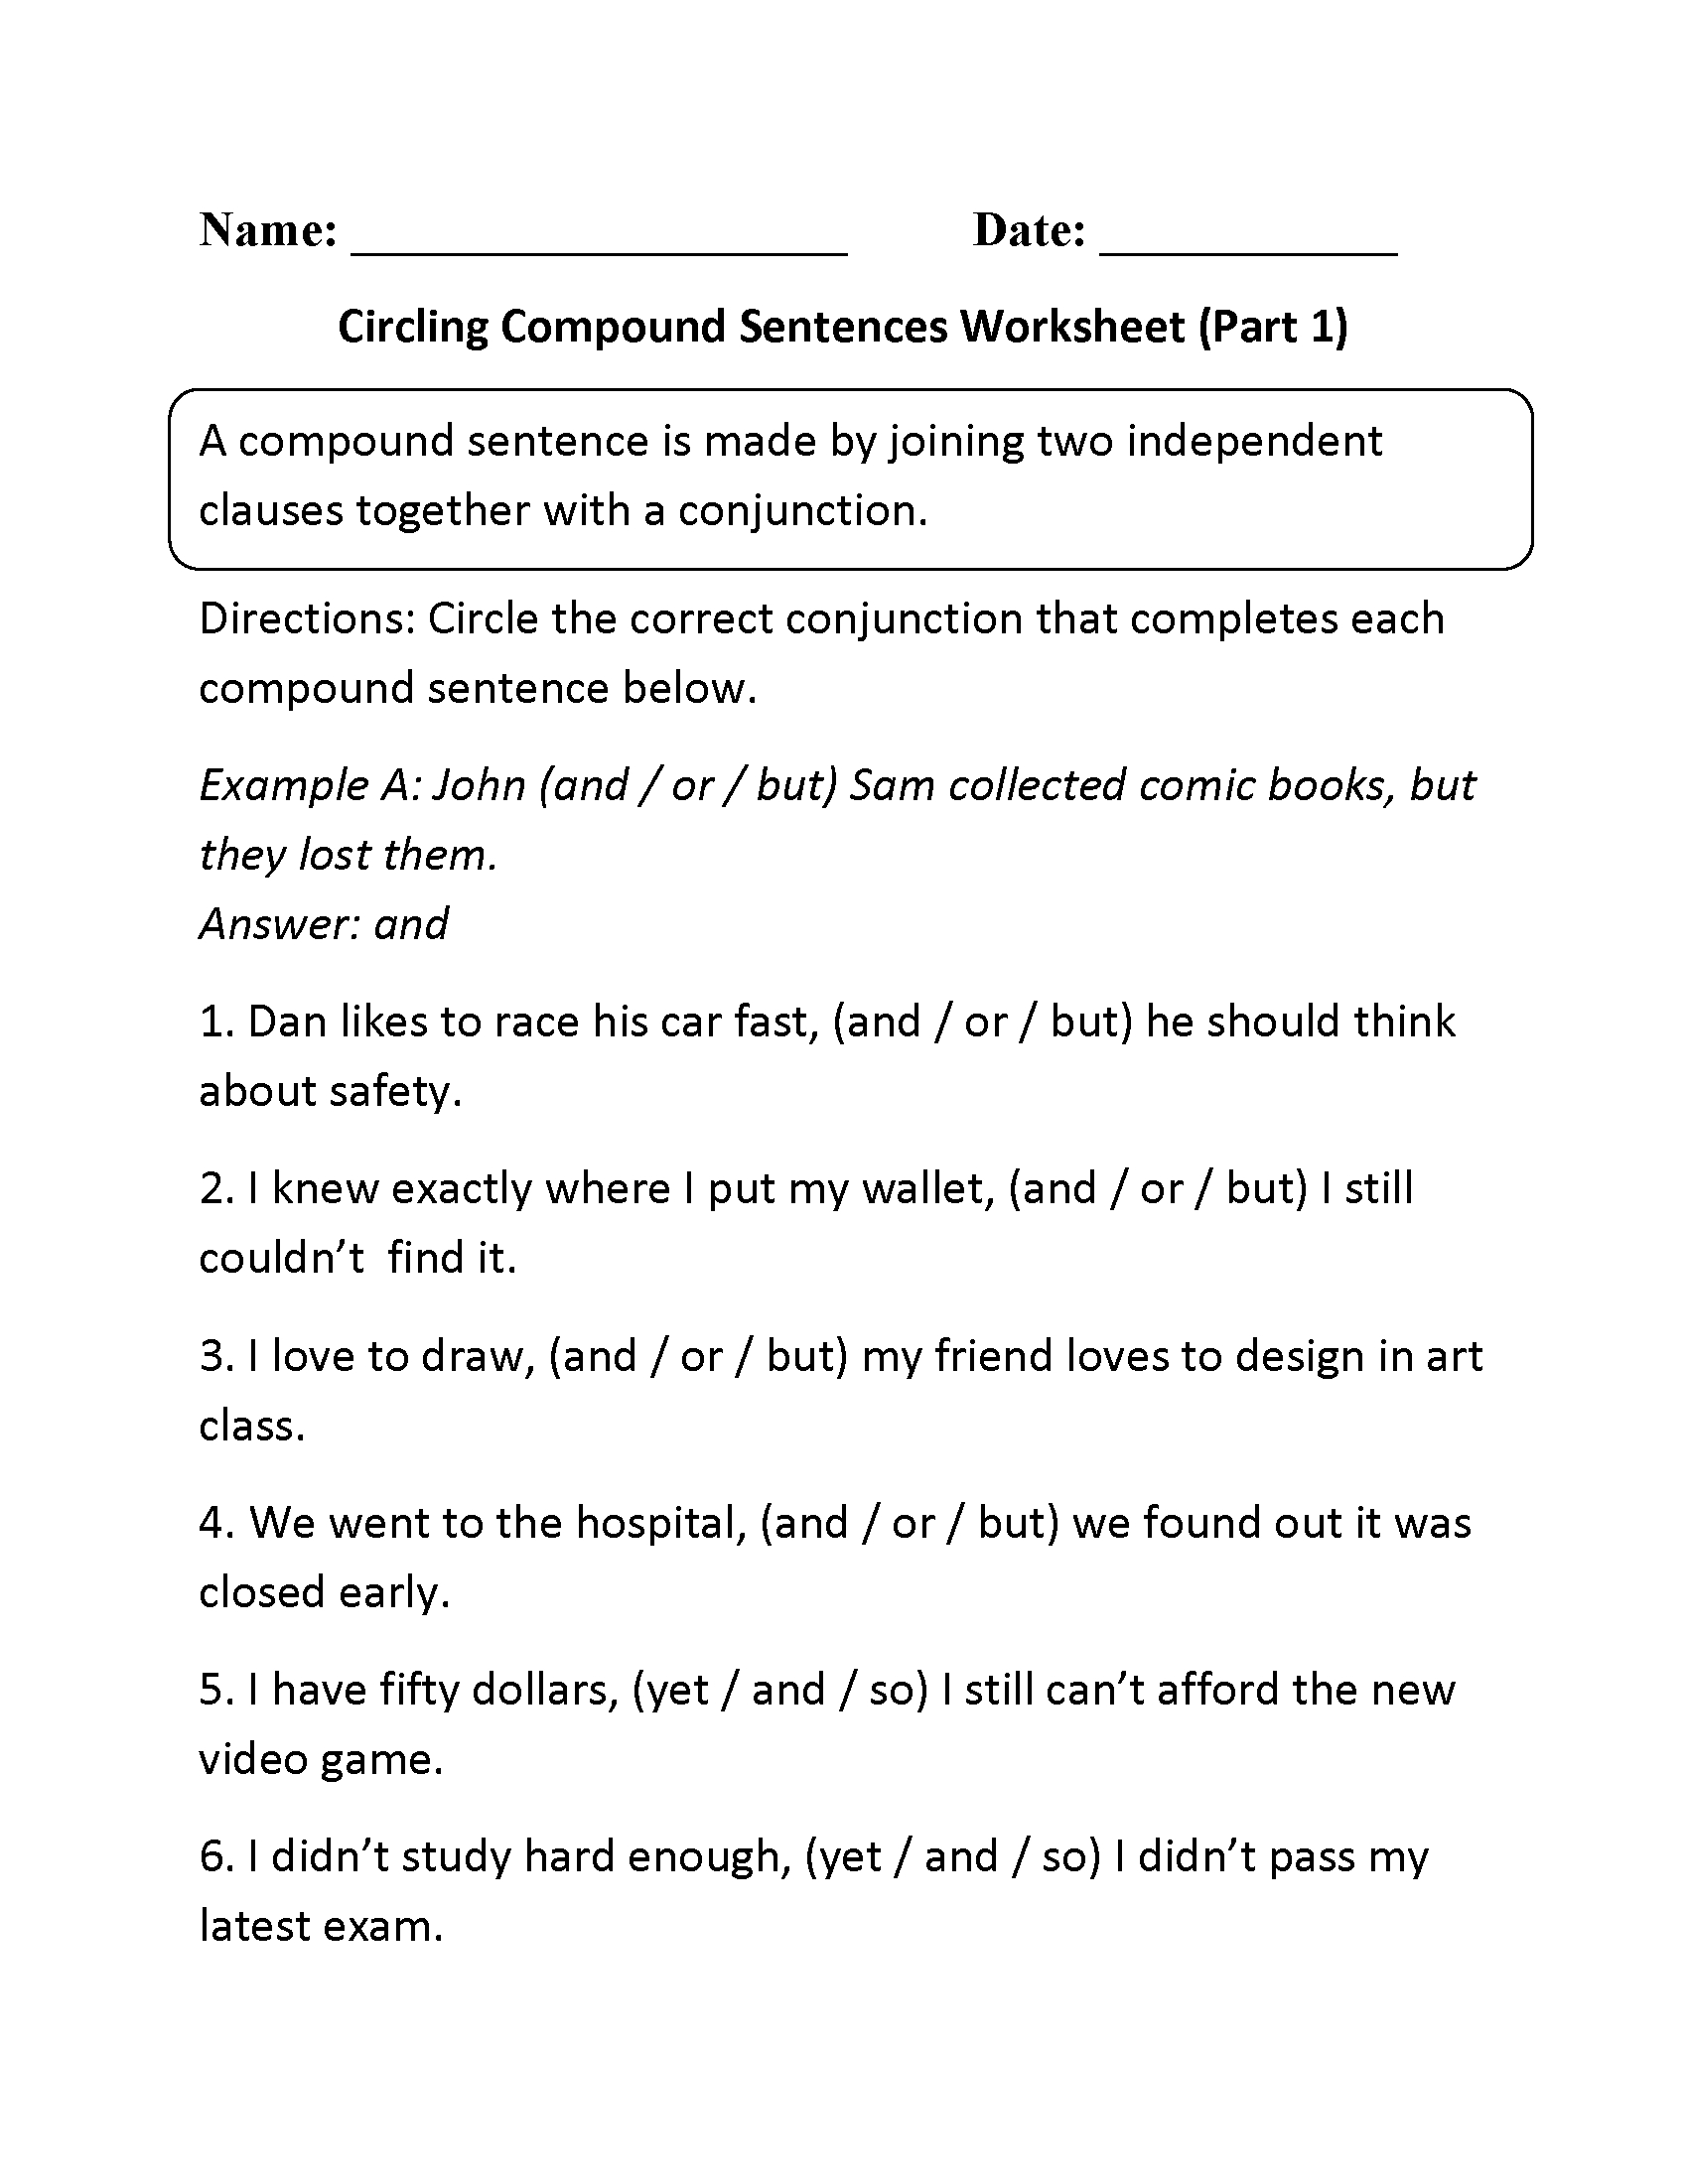 Sentences Worksheets  Compound Sentences Worksheets Throughout Compound Sentences Worksheet With Answers